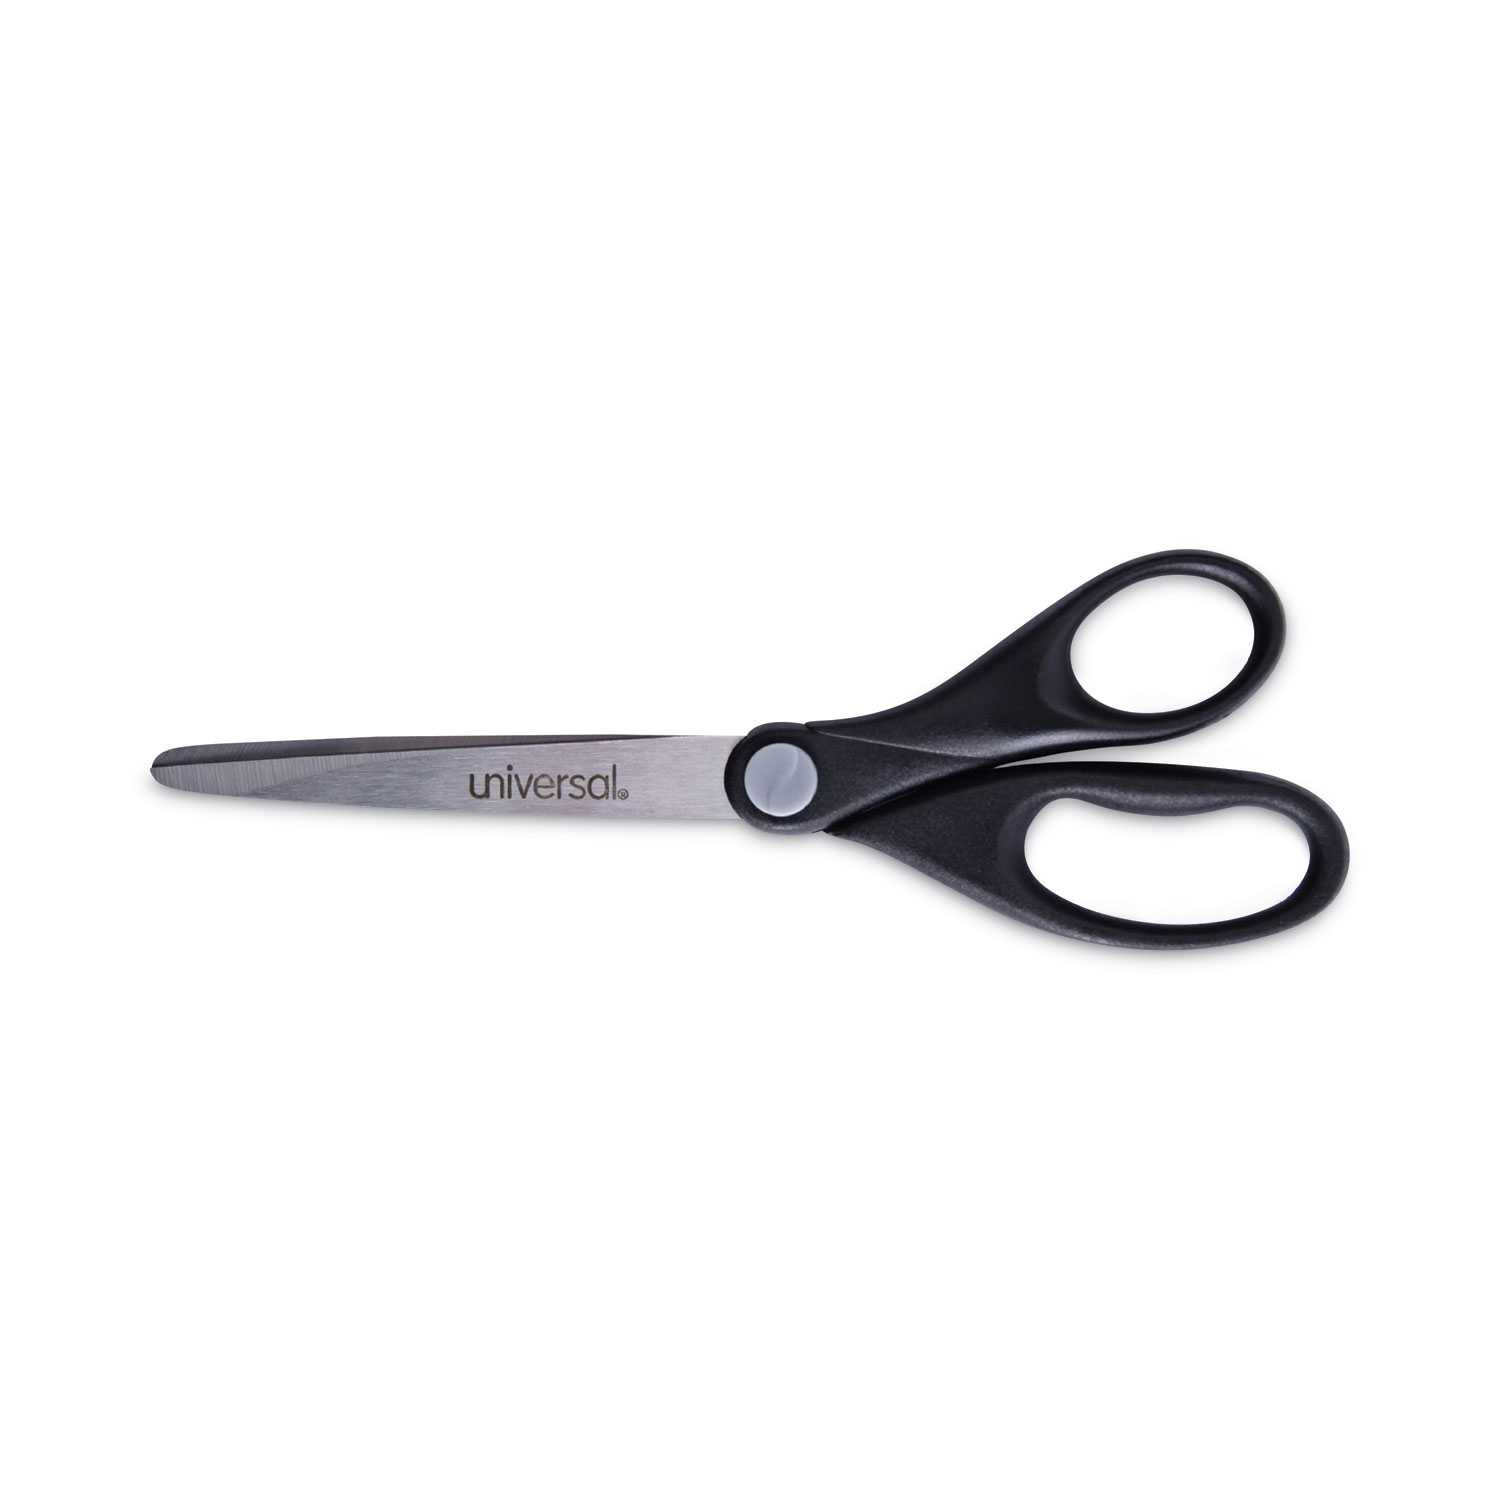 Fiskars Scissors - Stainless Steel - Black - 2 / Pack